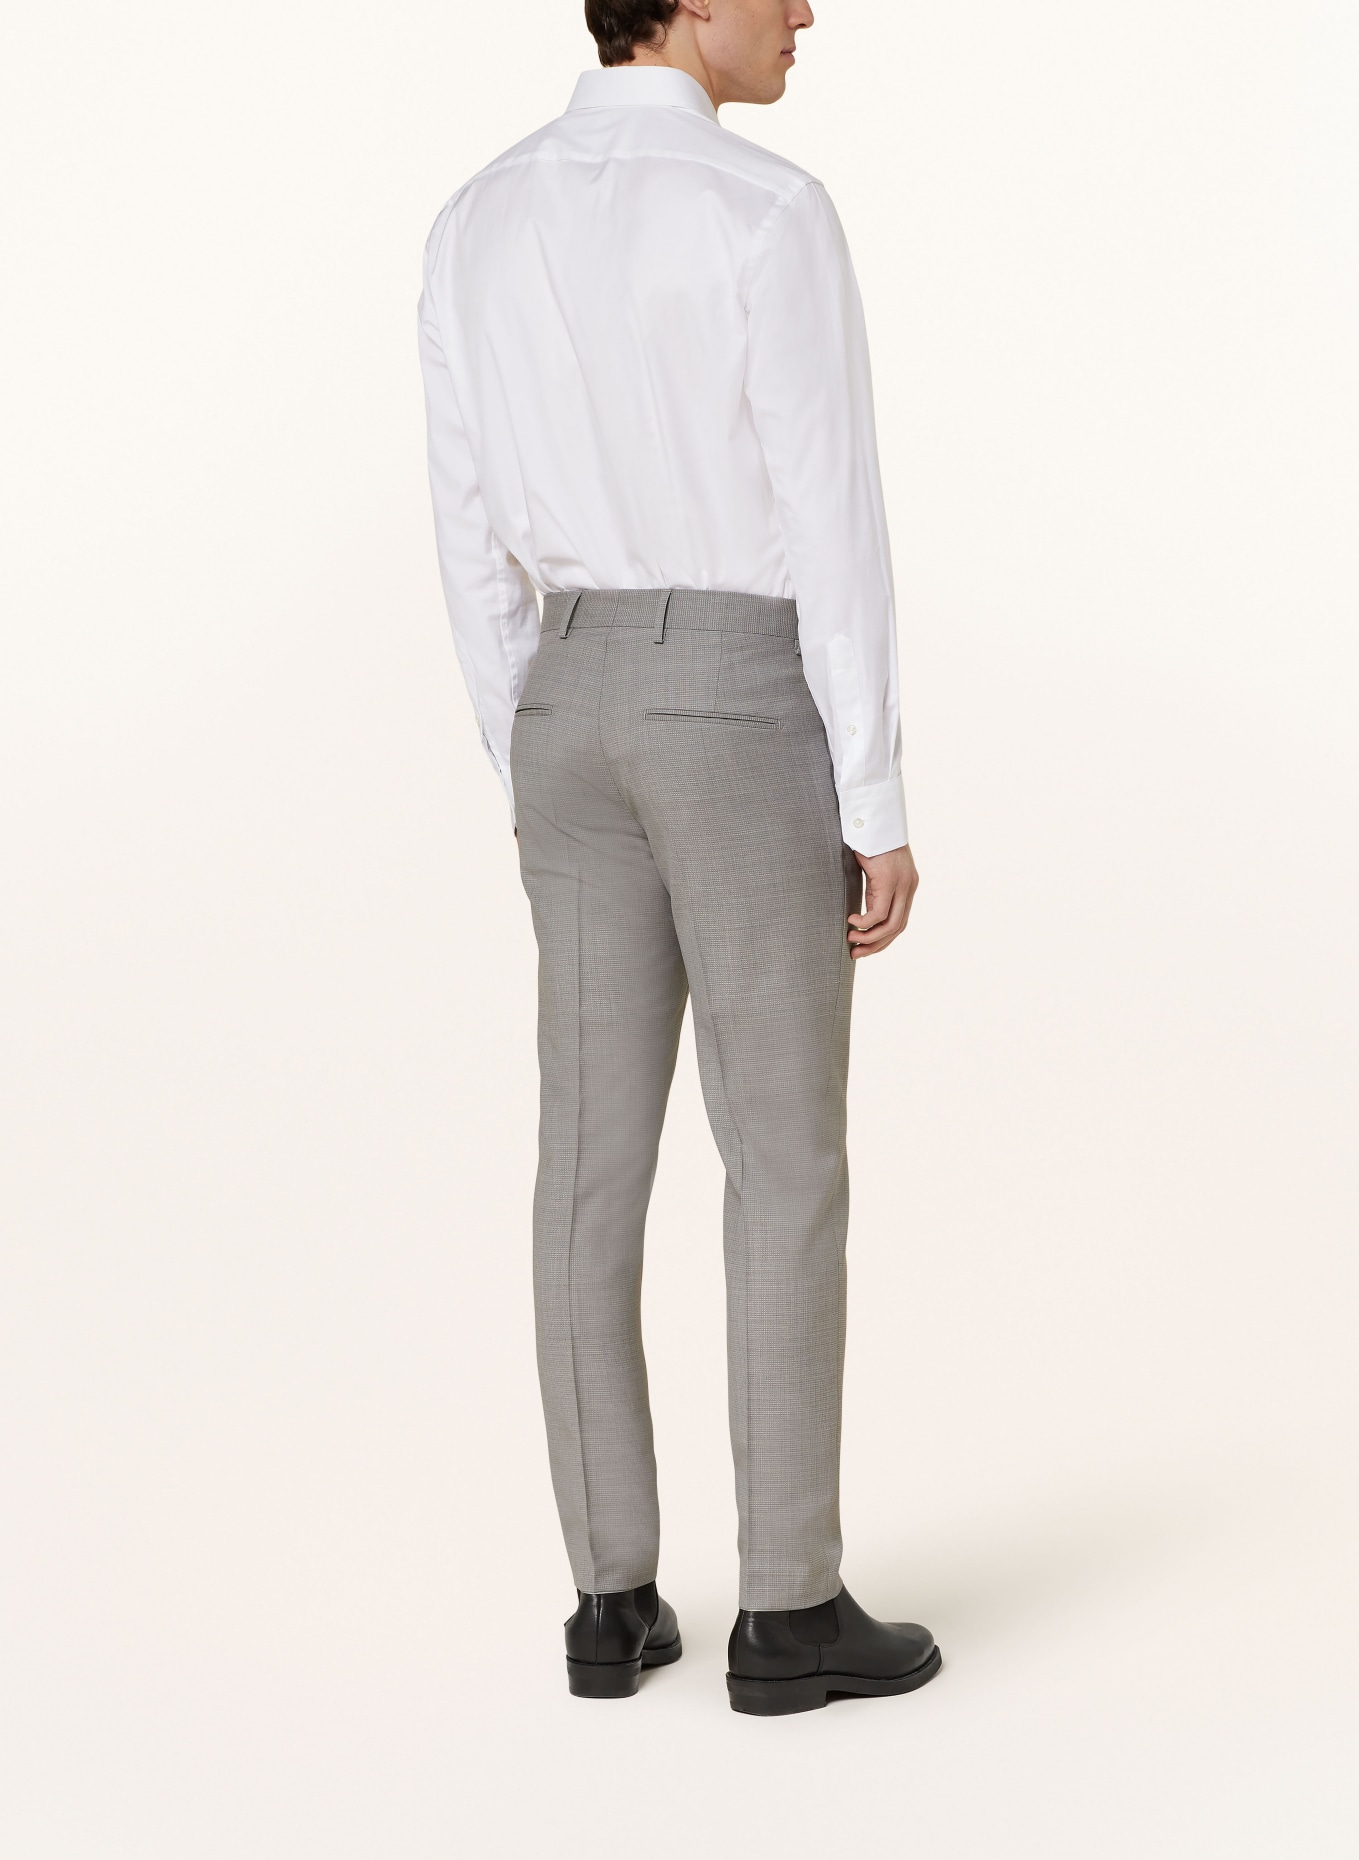 TIGER OF SWEDEN Suit trousers TENUTA slim fit, Color: M04 Light Grey Melange (Image 4)